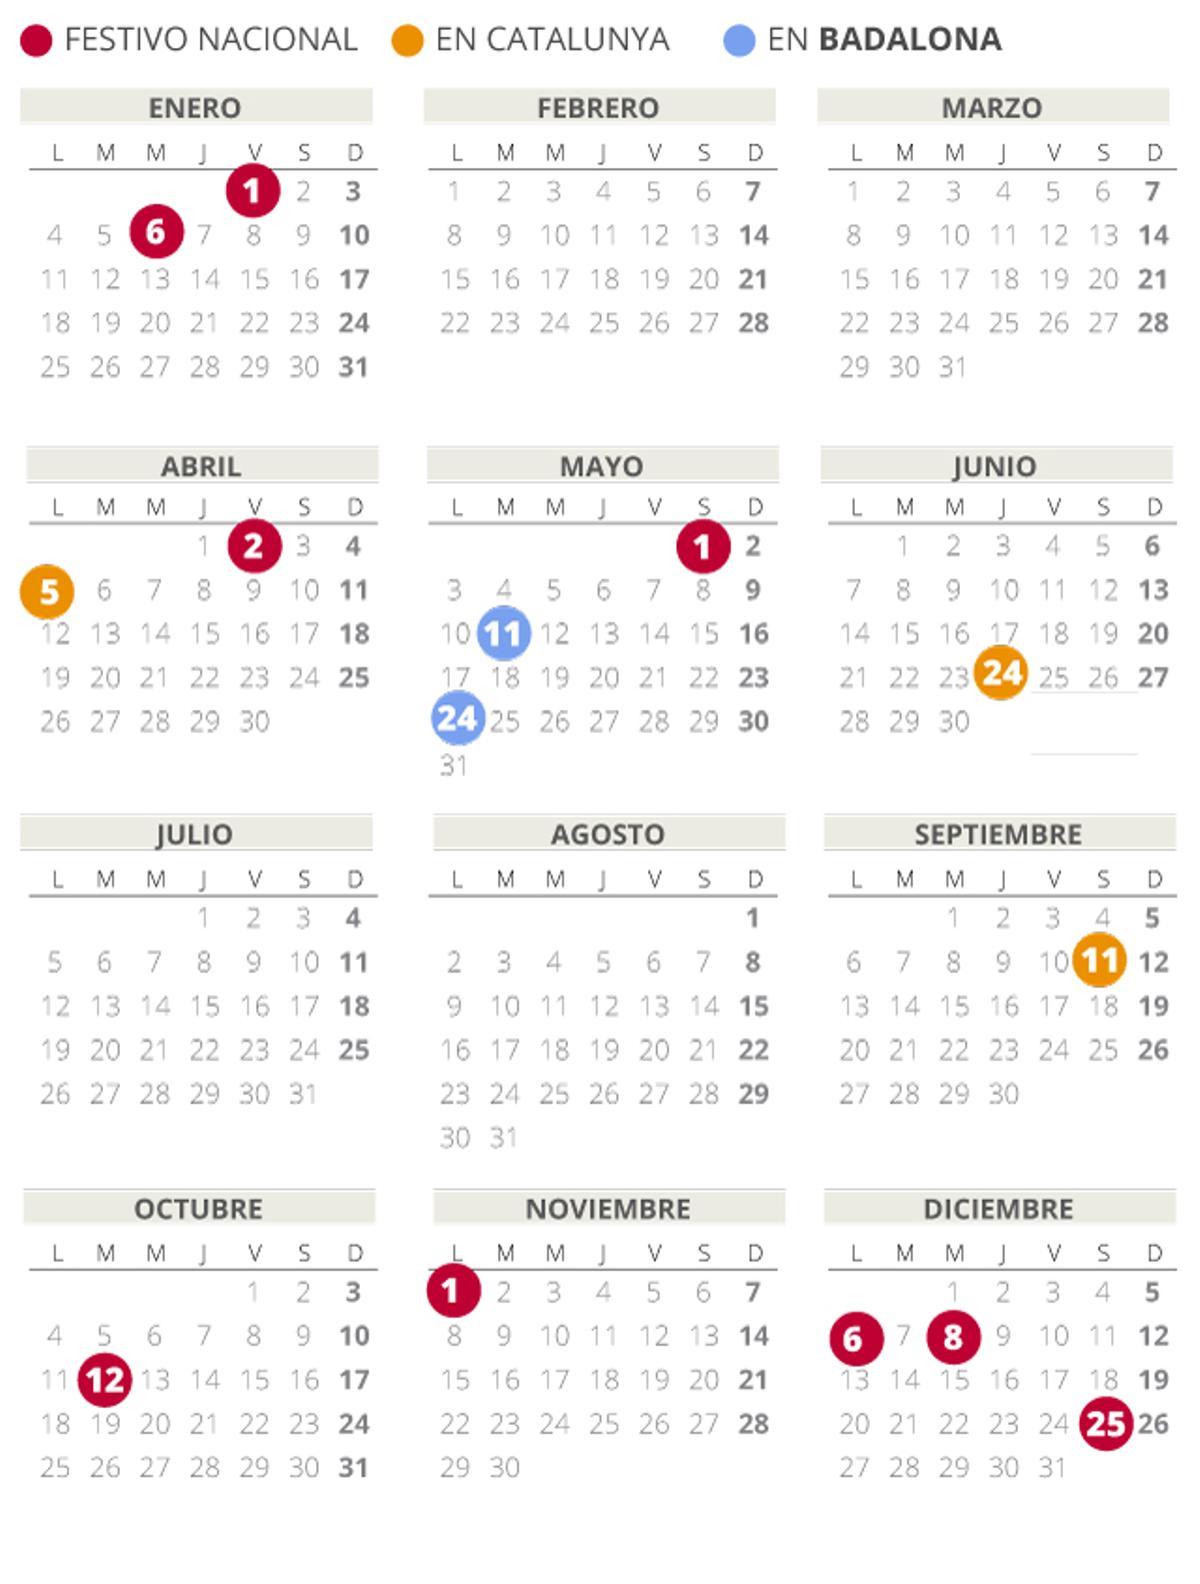 Calendario laboral de Badalona del 2021 (con todos los festivos)